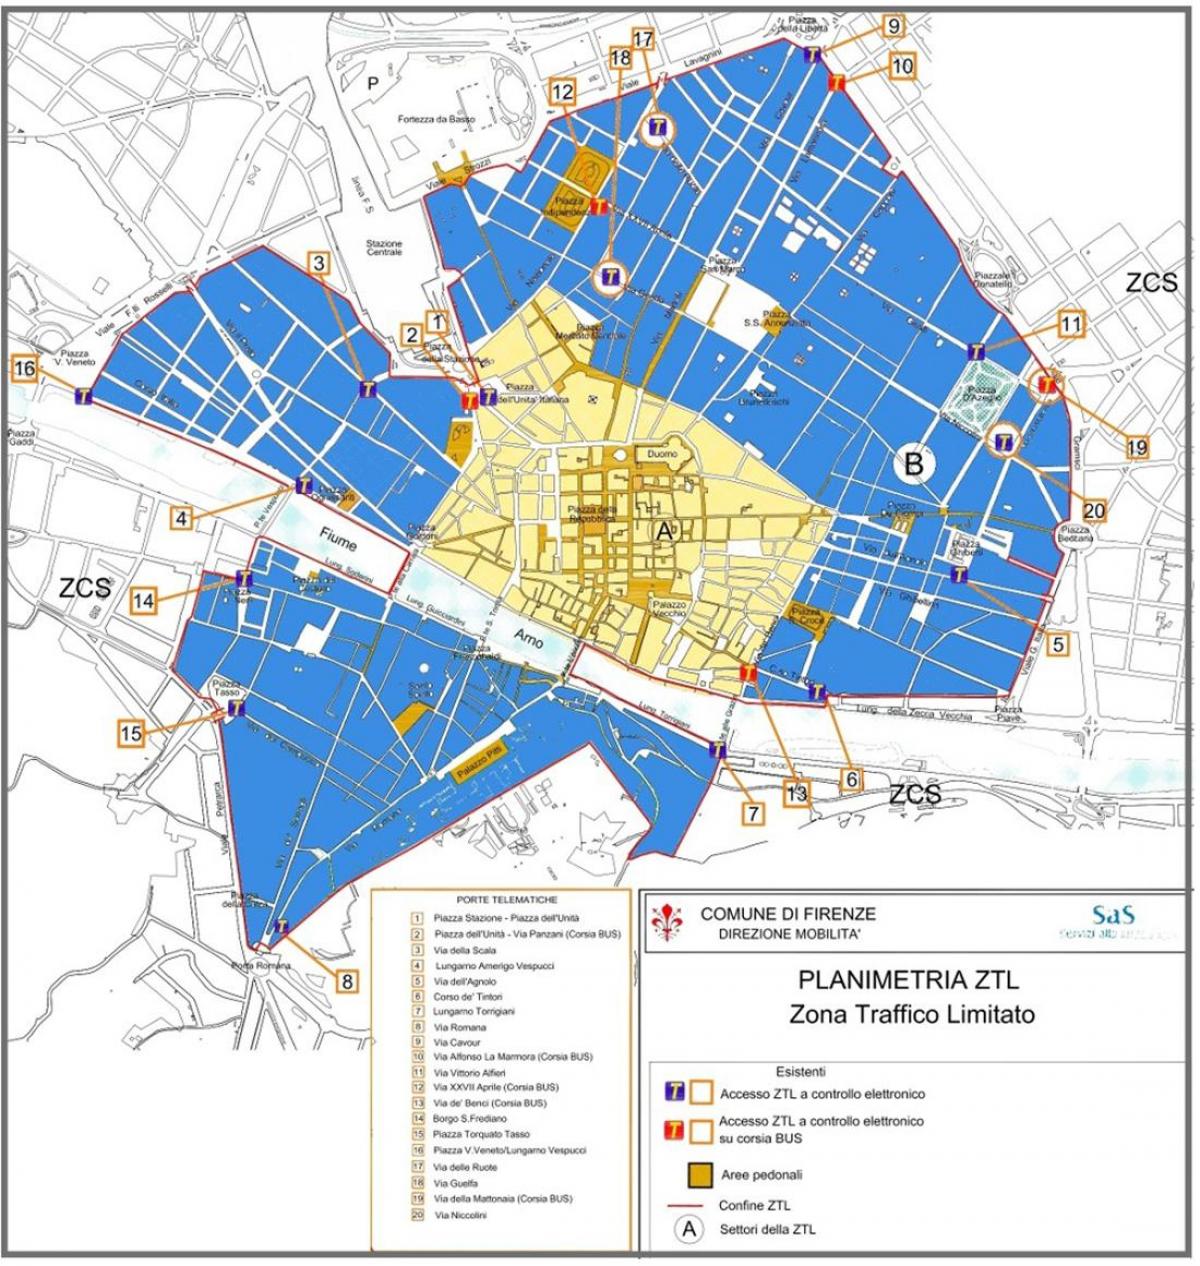 térkép milan ztl zóna